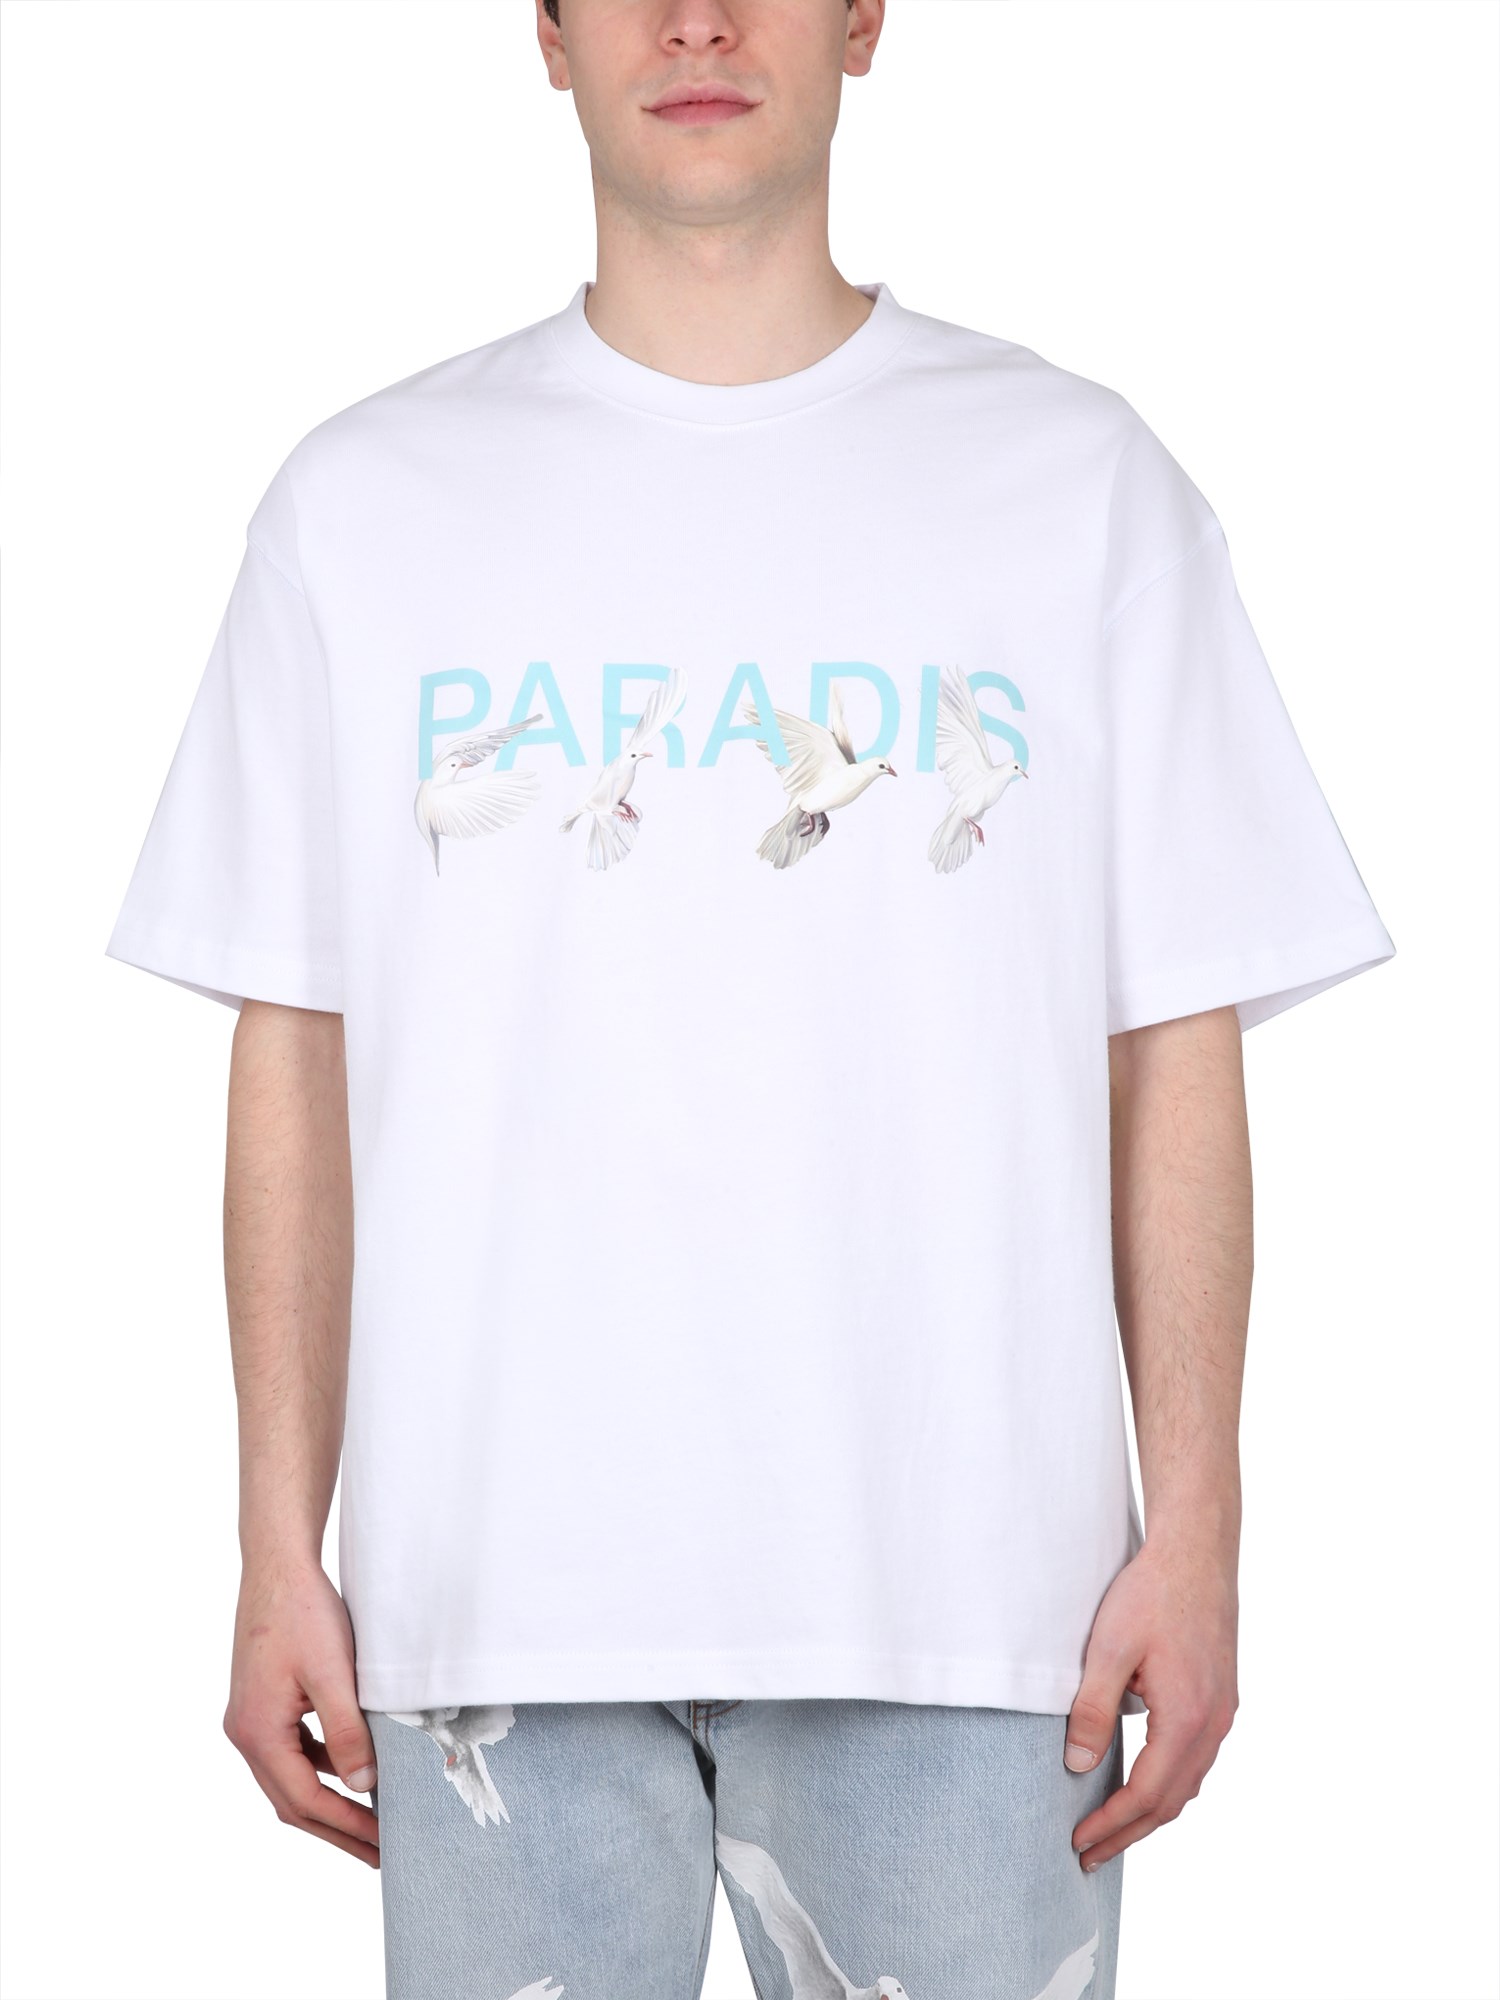 3.paradis 3.paradis paradis t-shirt